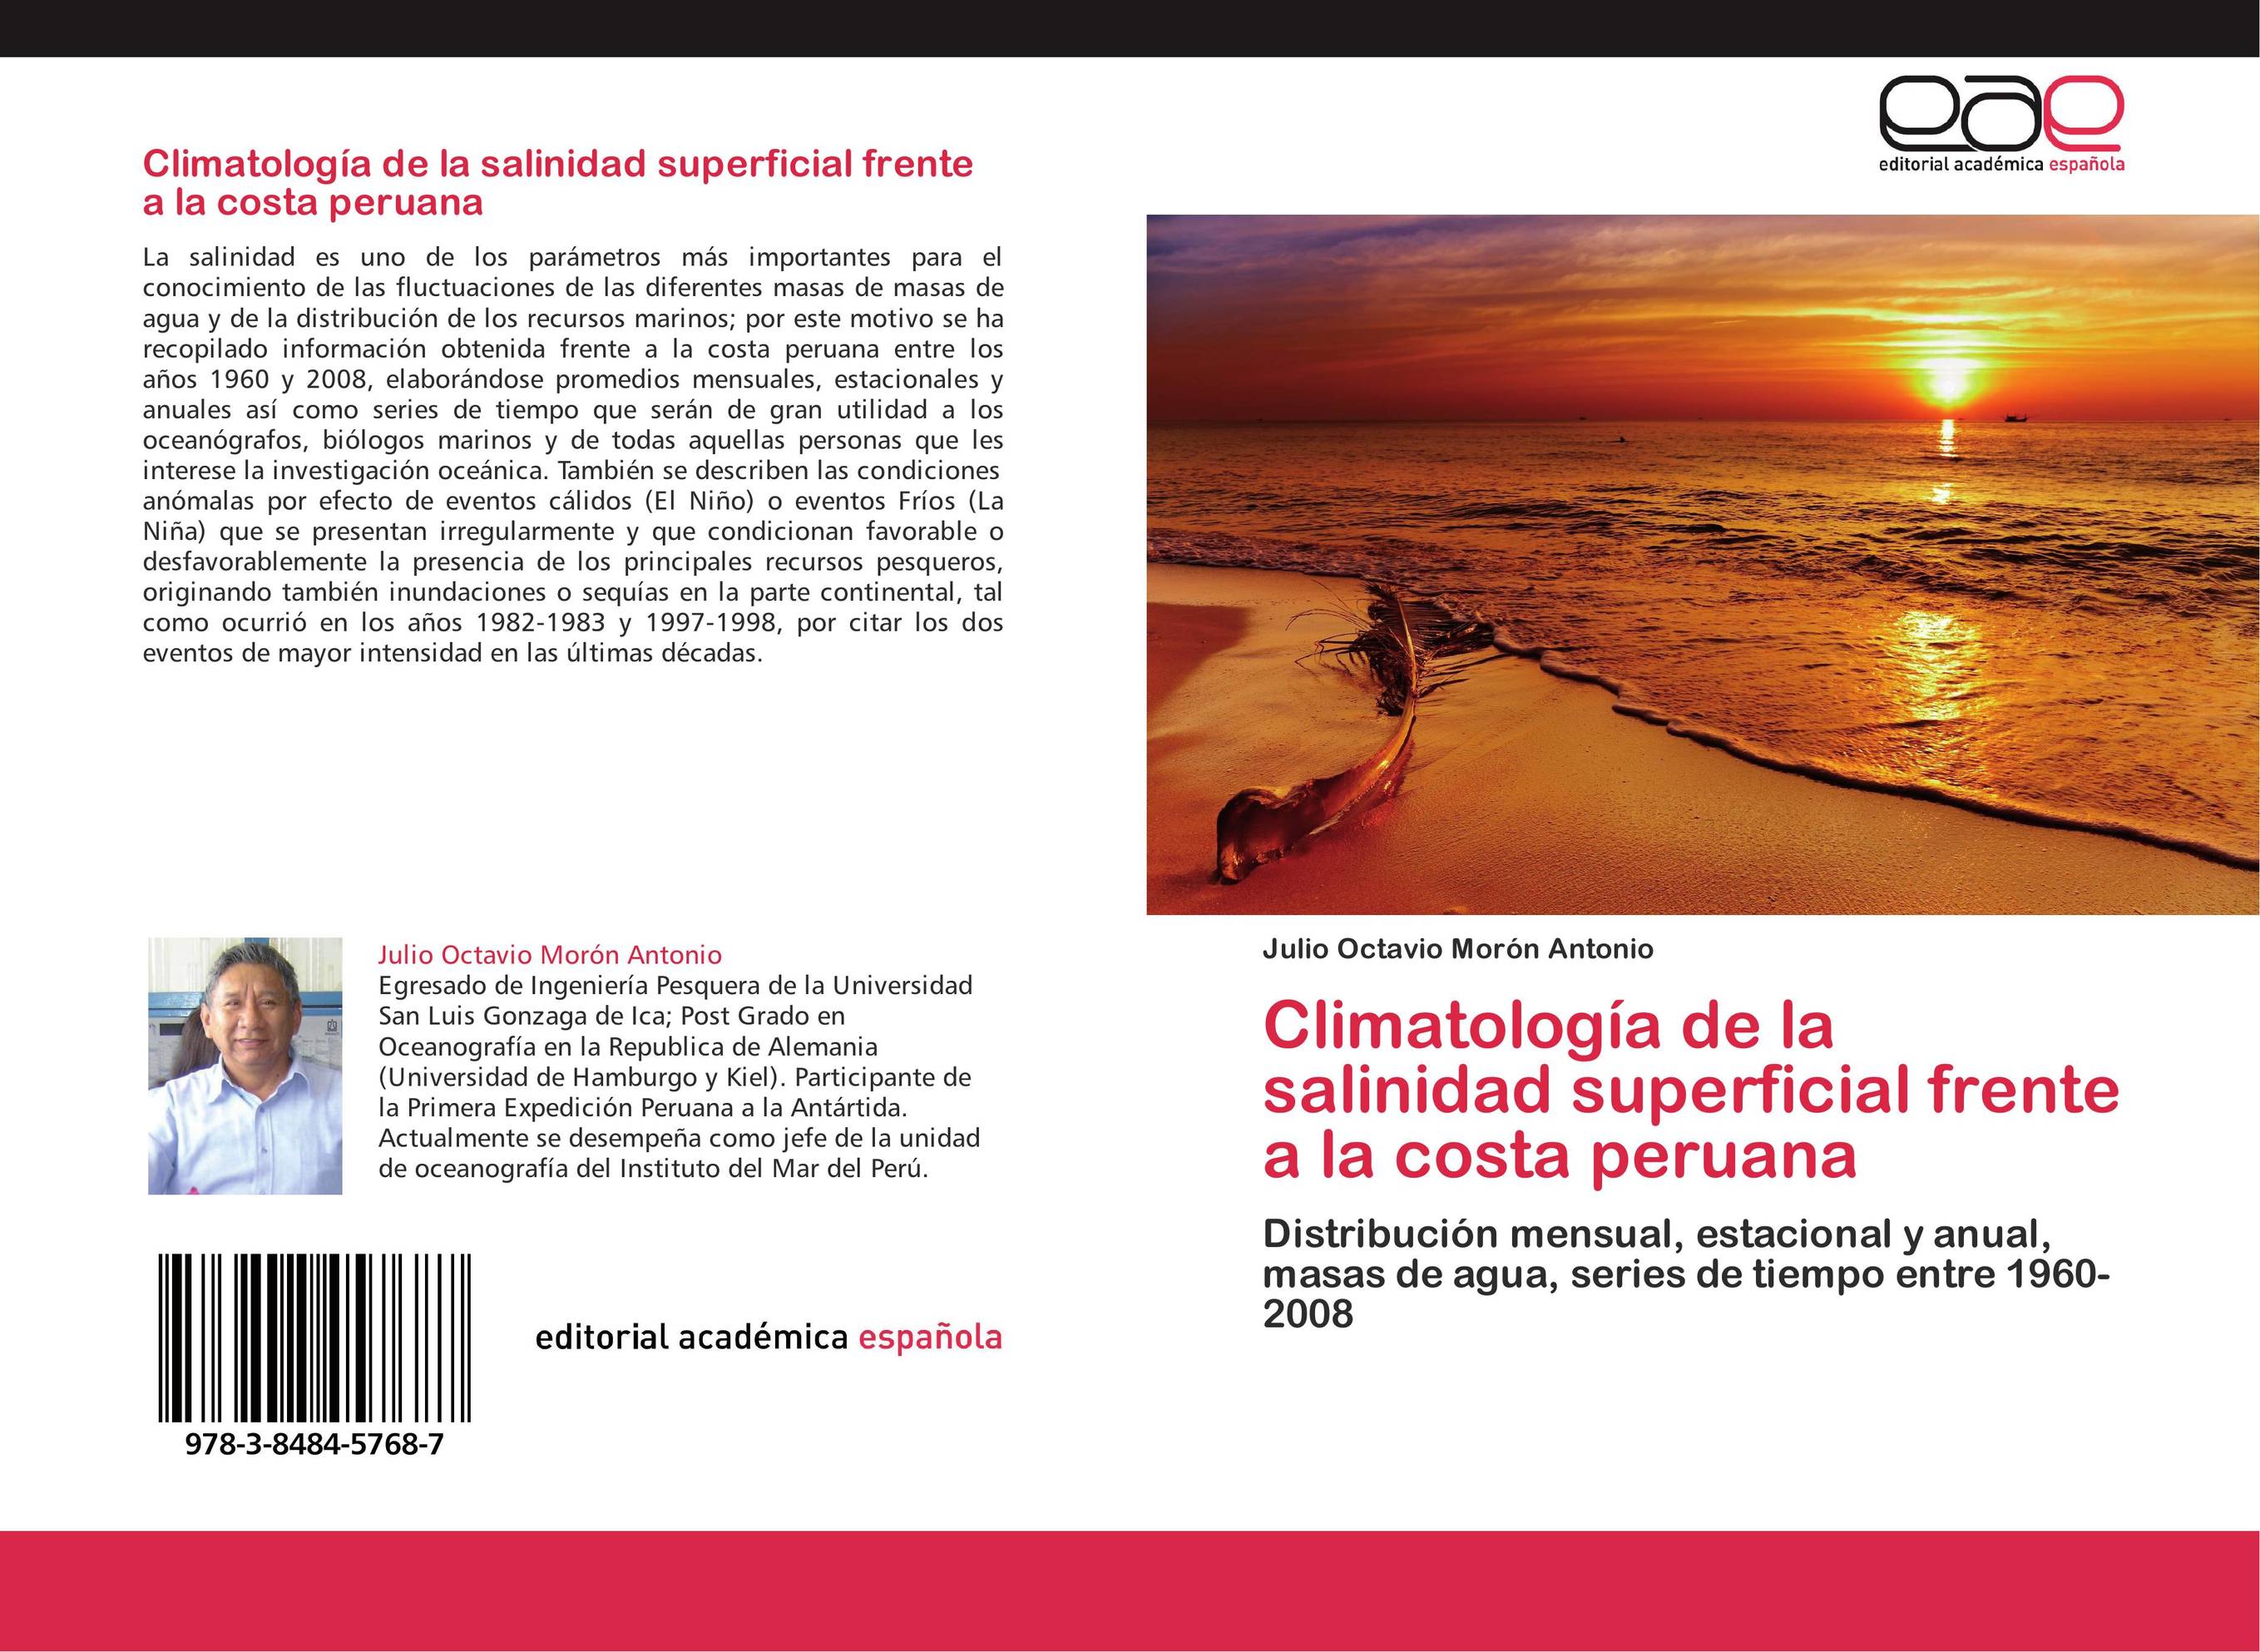 Climatología de la salinidad superficial frente a la costa peruana